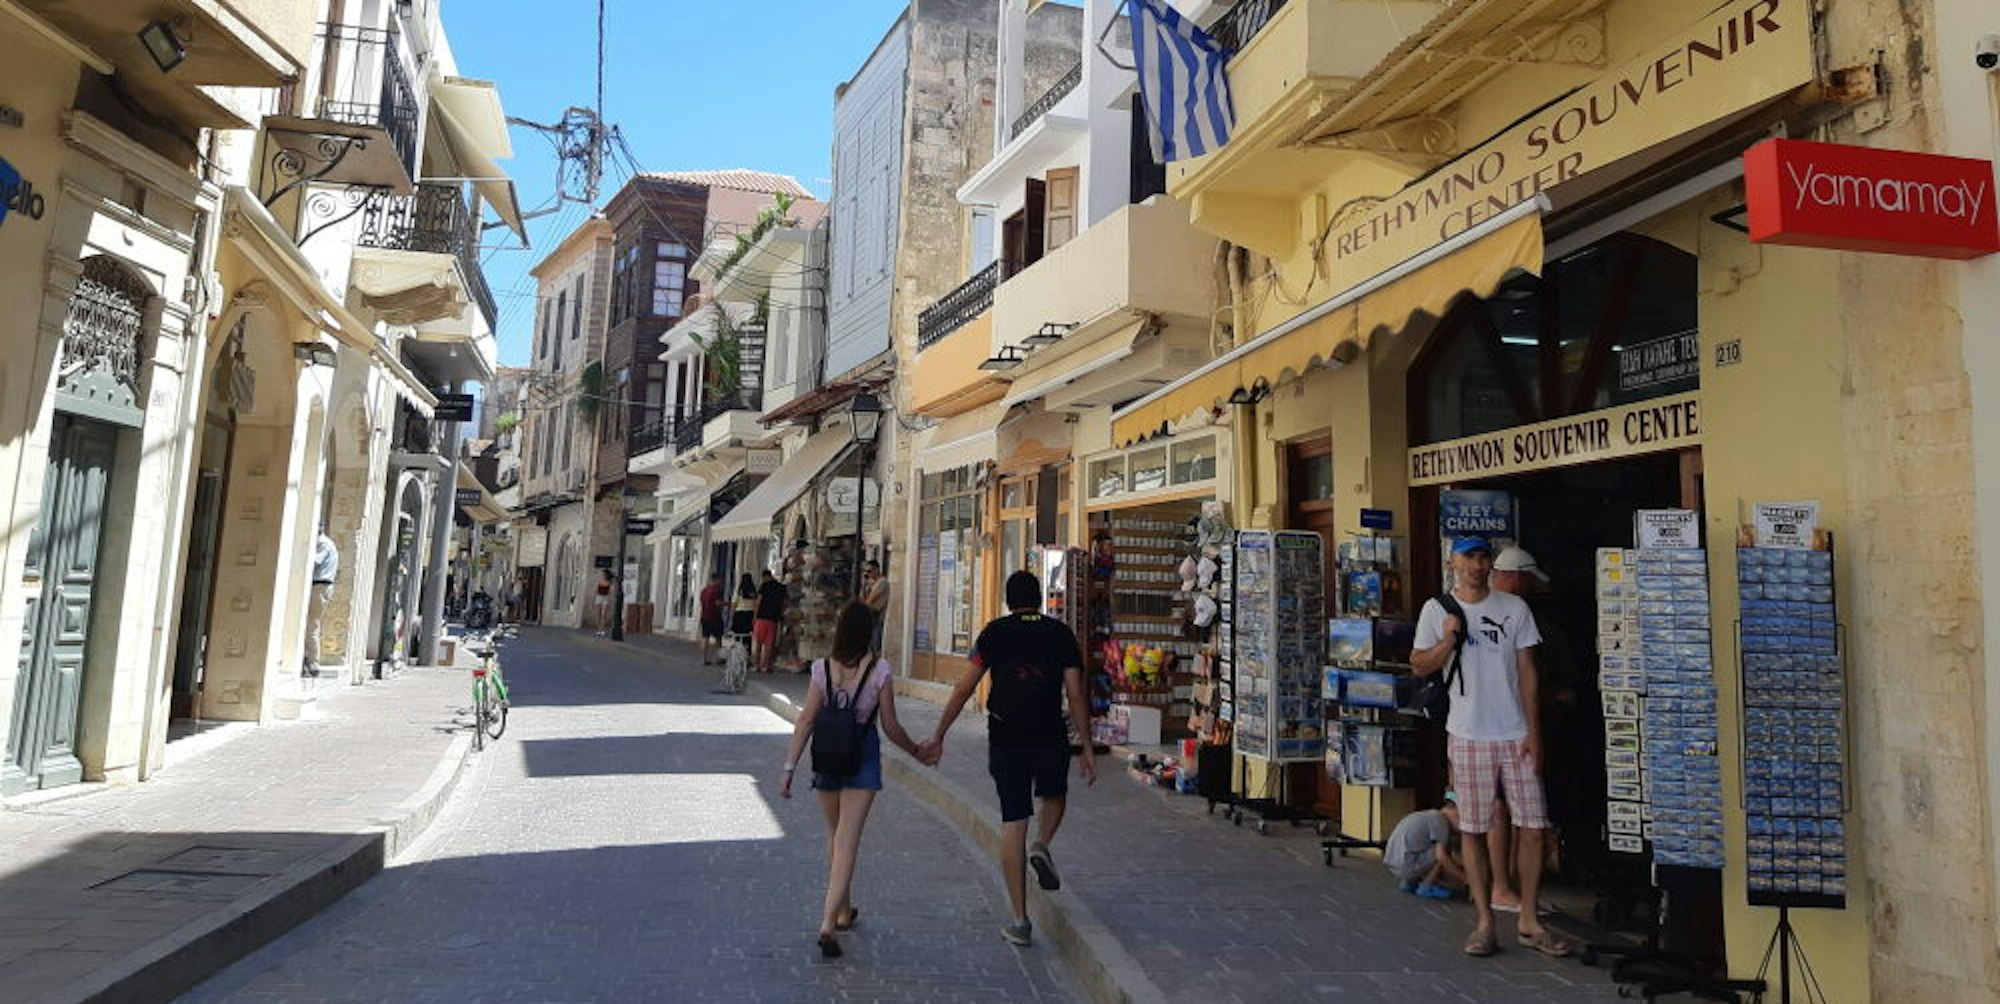 In der Küstenstadt Rethymno sind Mitte Juli nur vereinzelt Touristen unterwegs.